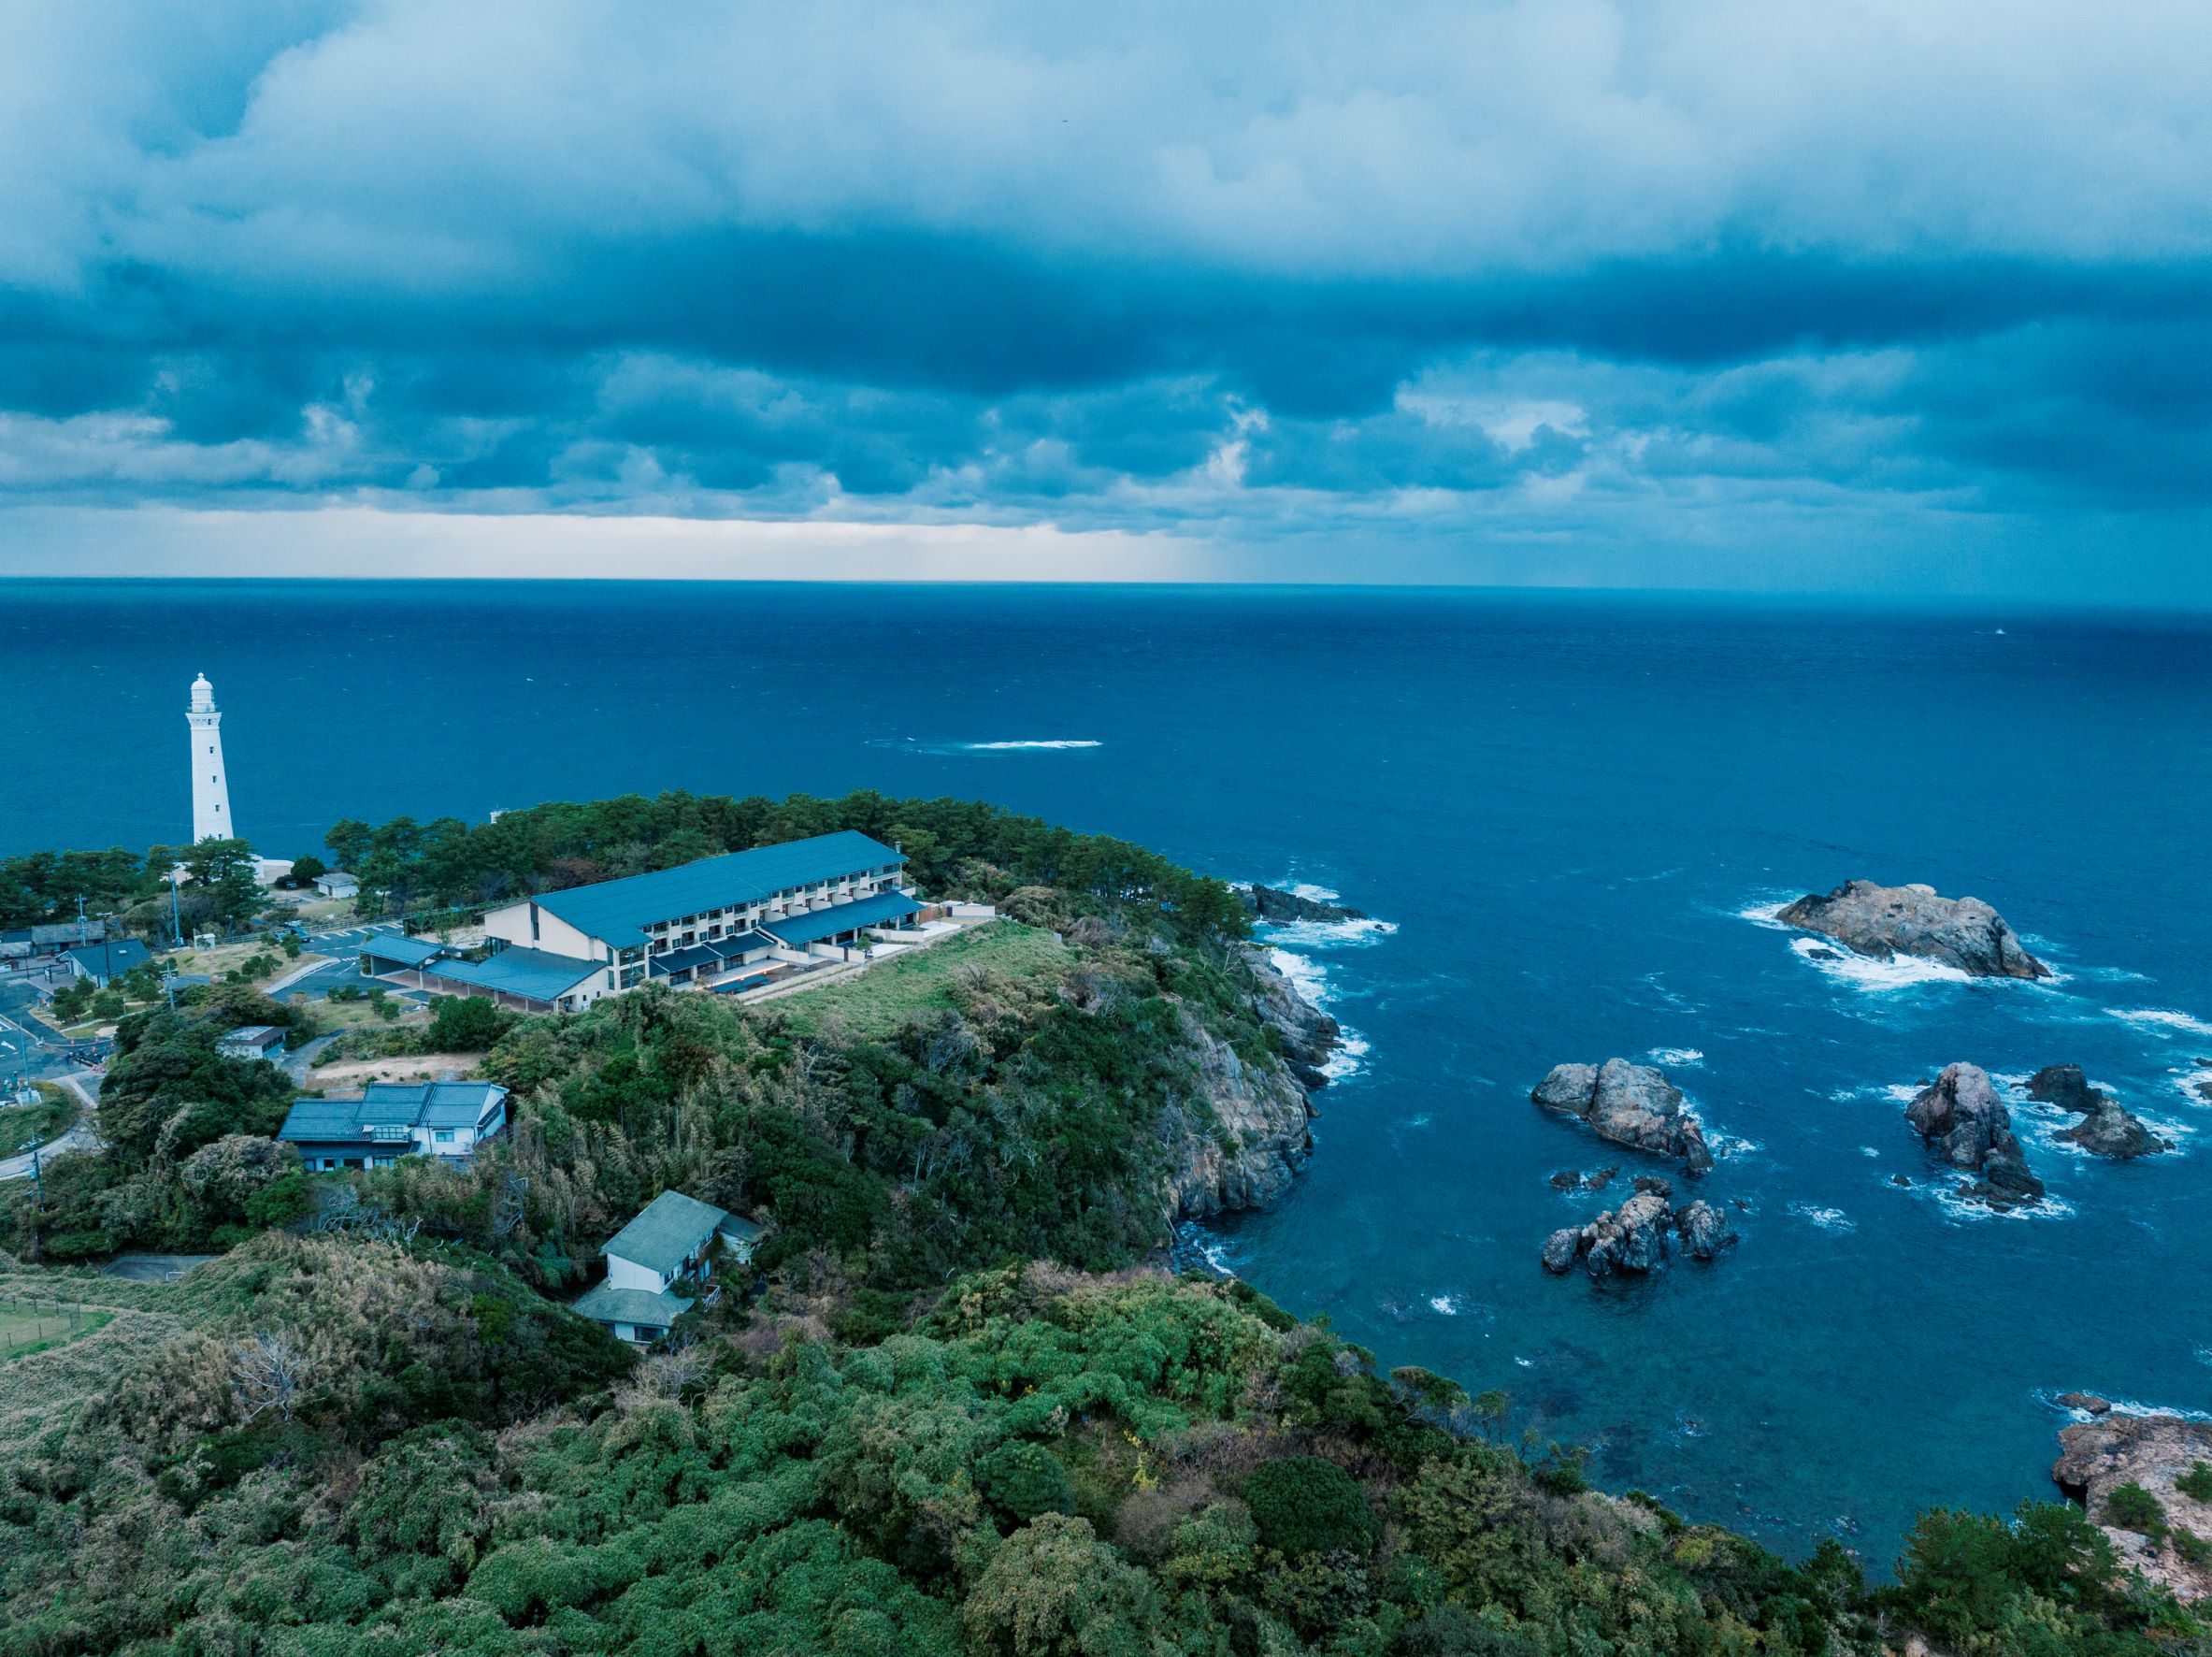 日御碕灯台や日本海を望む岬に立つ温泉旅館です。